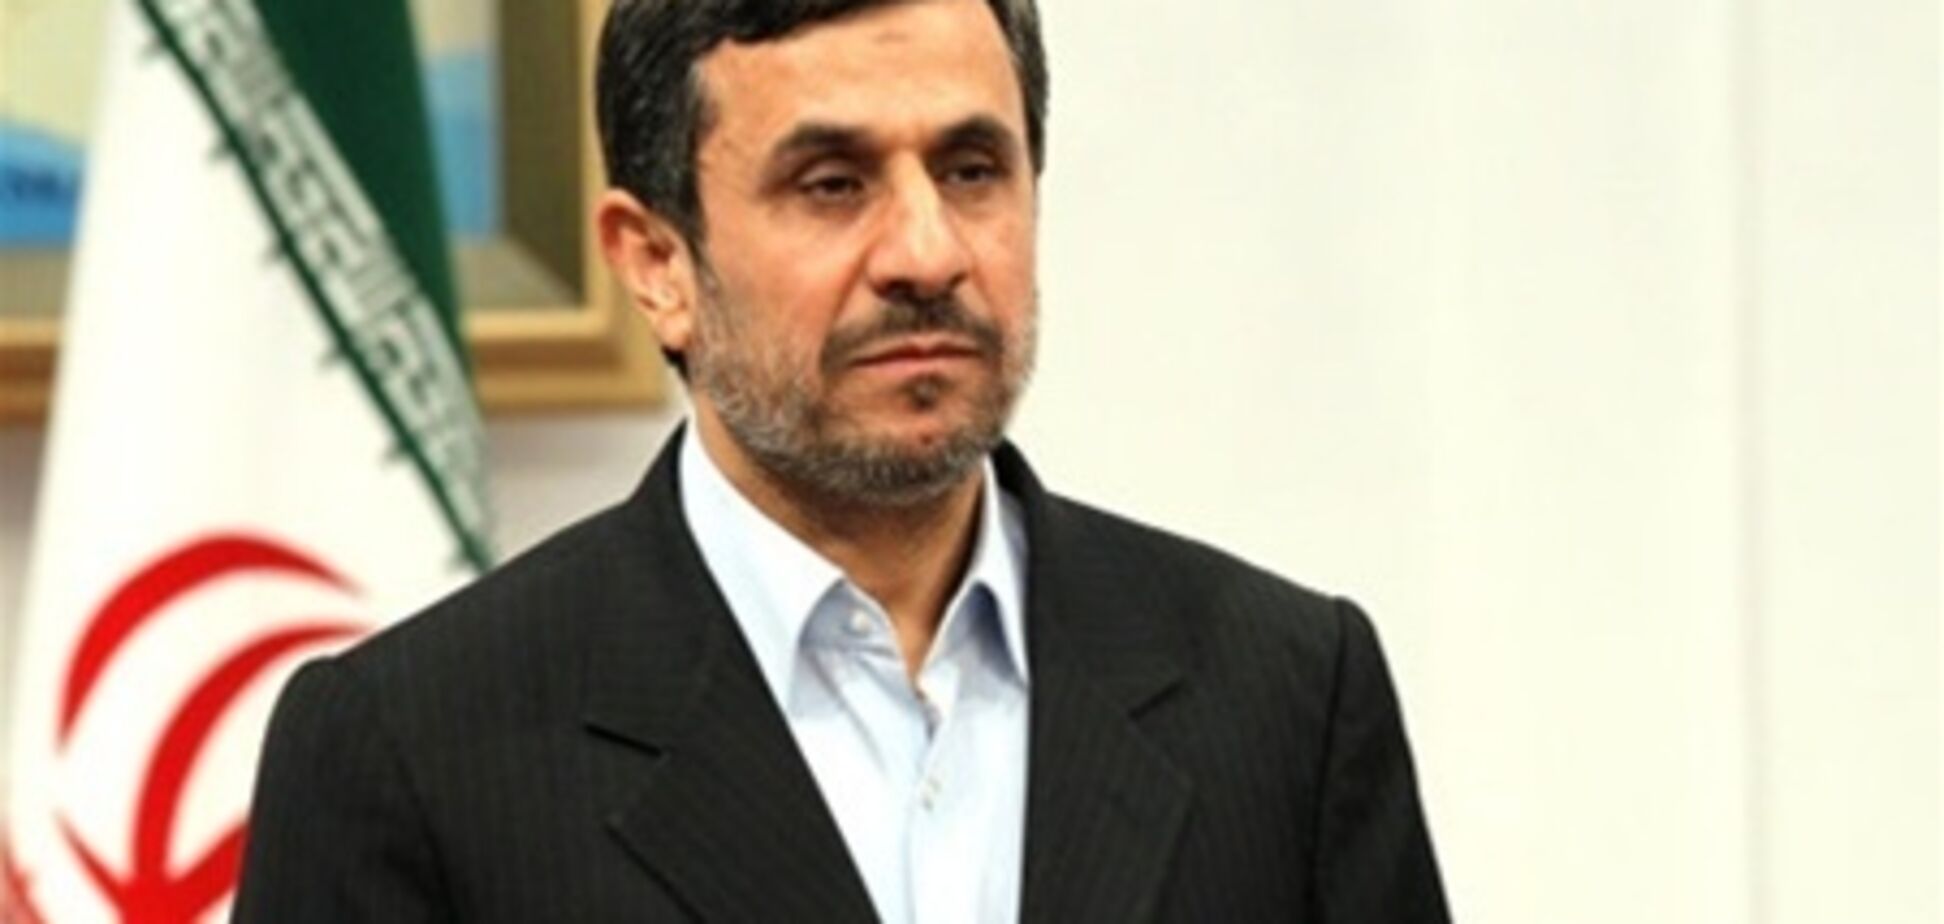 Ахмадінеджад розпродав офіційні подарунки на аукціоні 